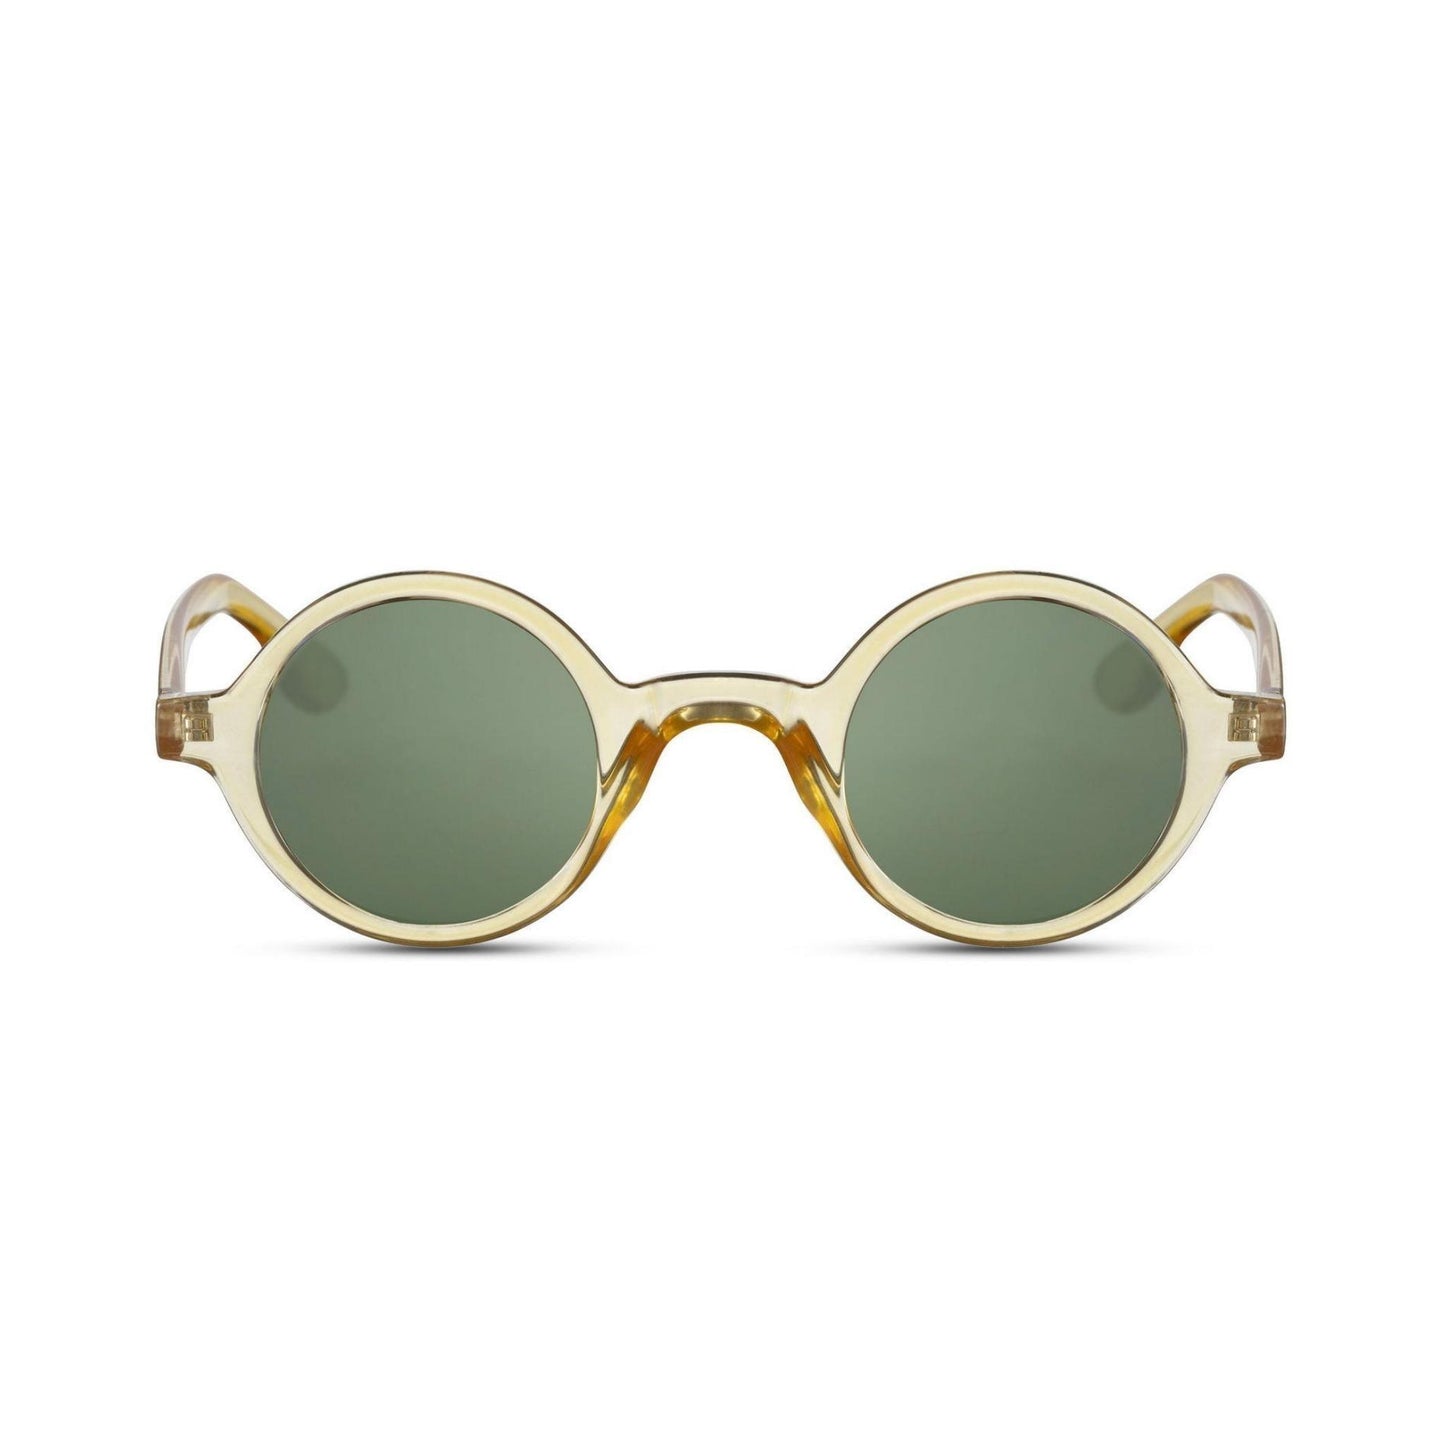 Στρογγυλά Γυαλιά Ηλίου Aurora της Exposure Sunglasses με προστασία UV400 σε κίτρινο χρώμα σκελετού και πράσινο φακό.